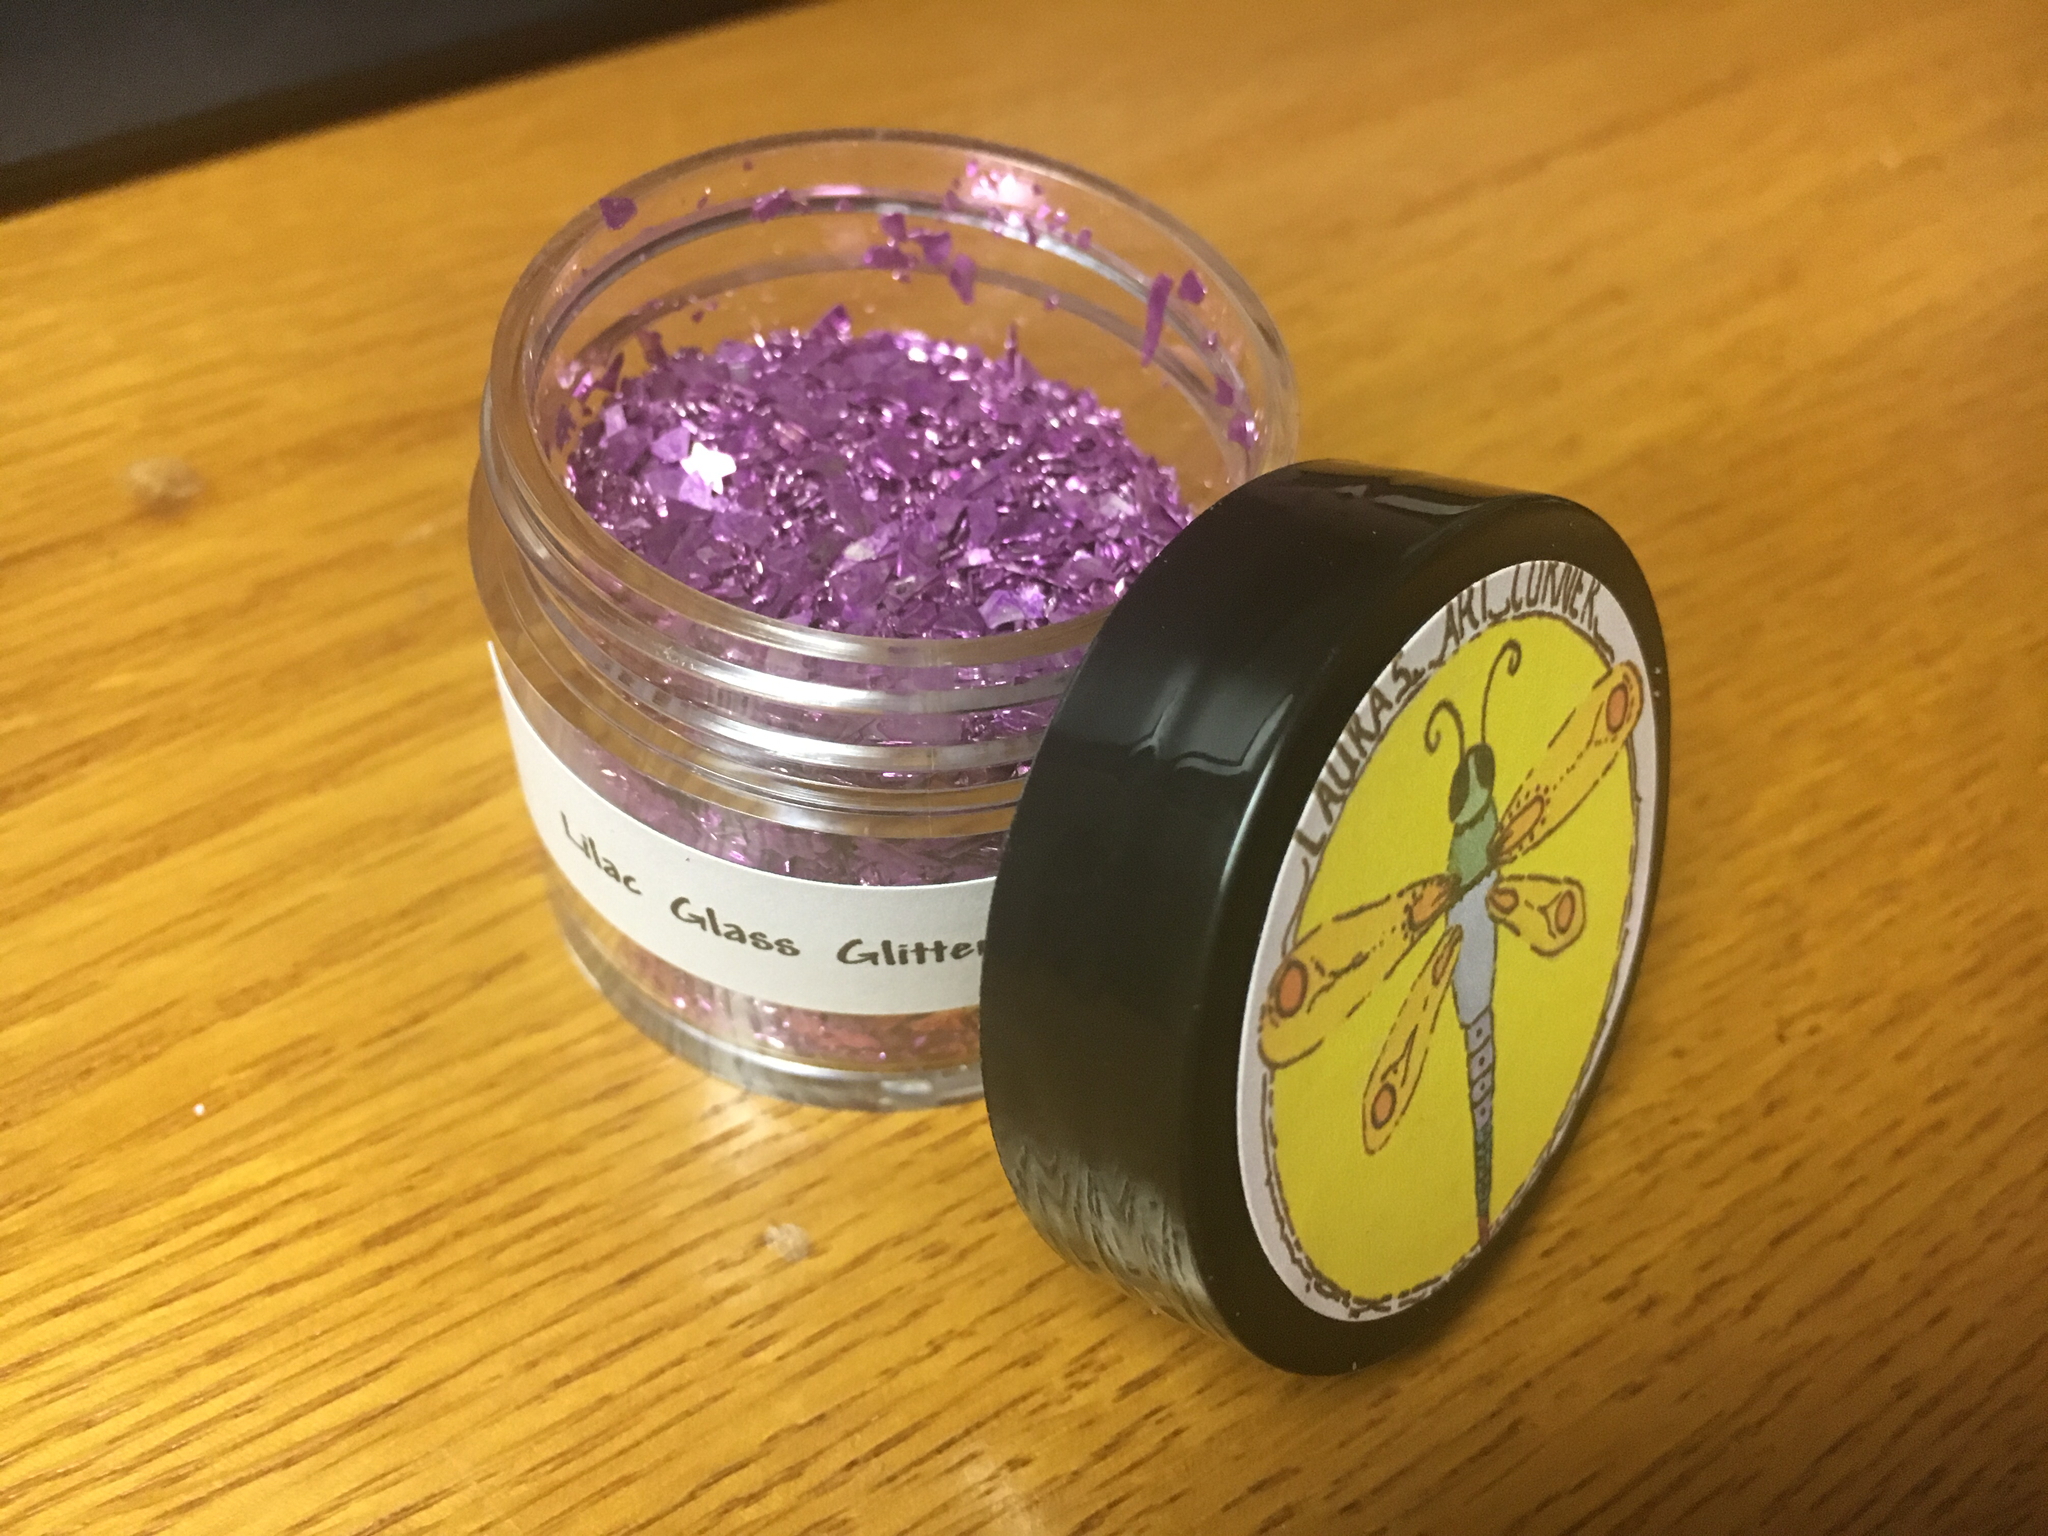 Lilac German Glass Glitter